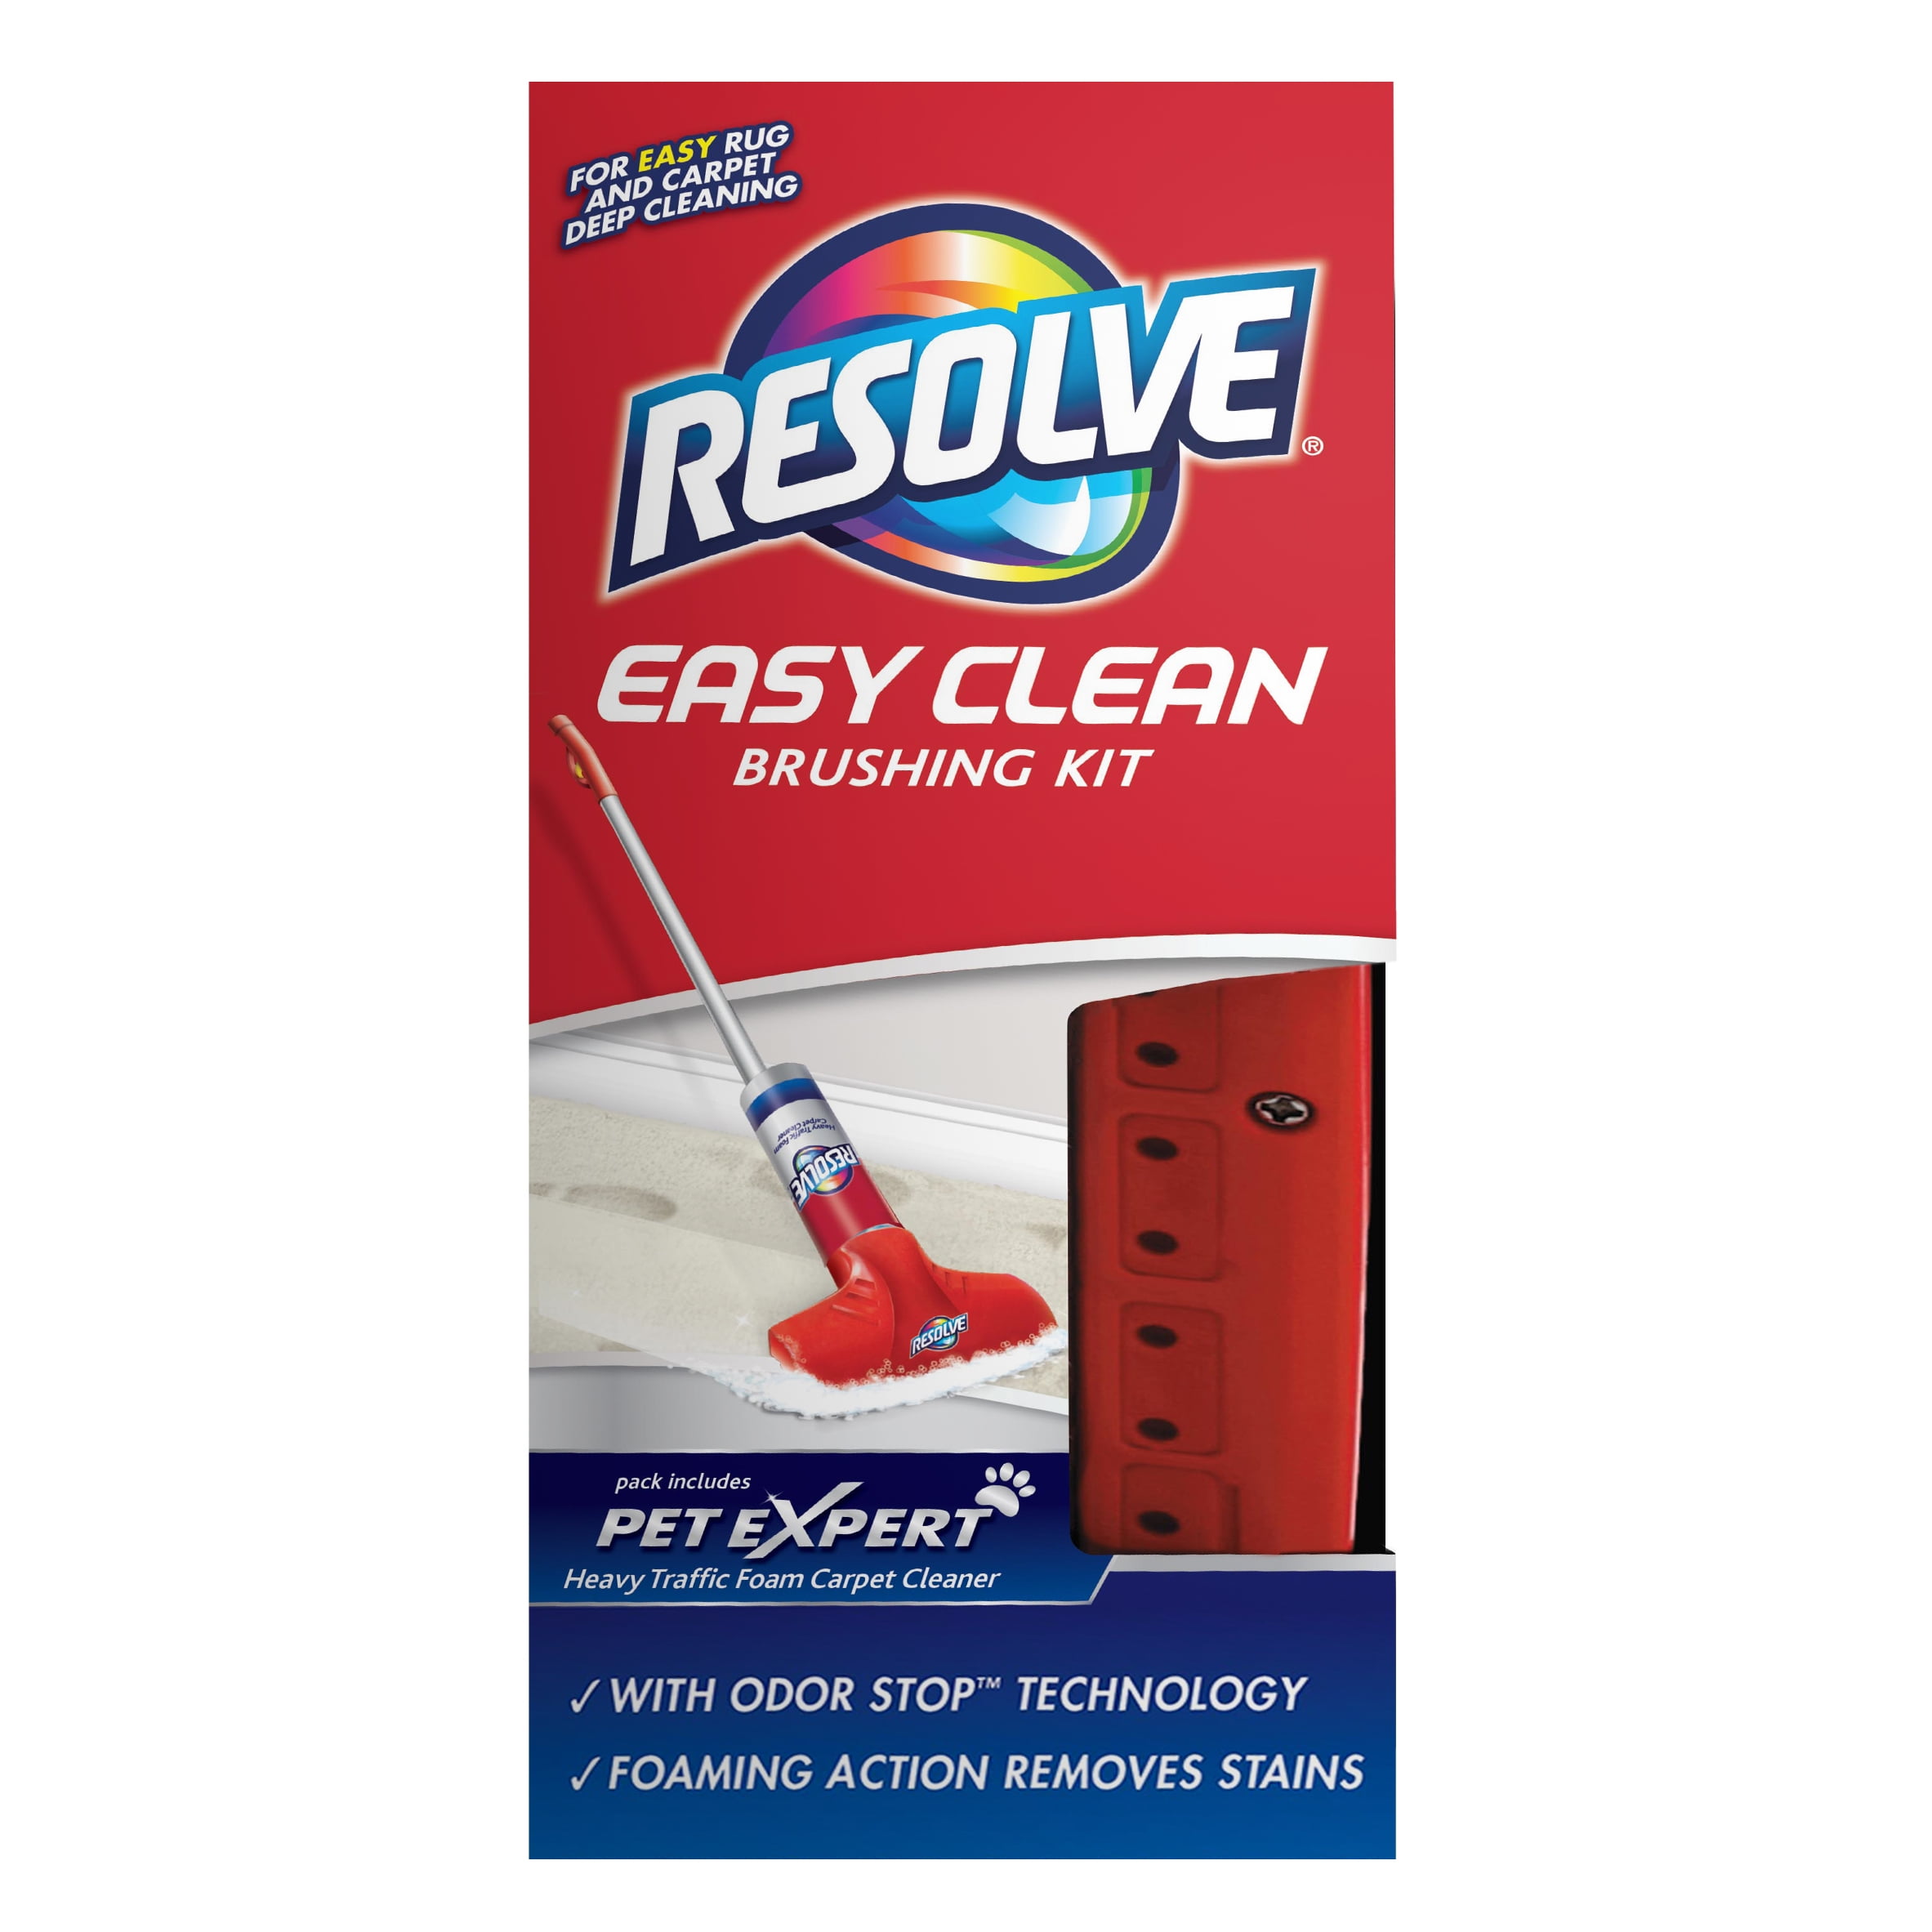 Resolve Pet Expert Brushing Kit, Easy Clean